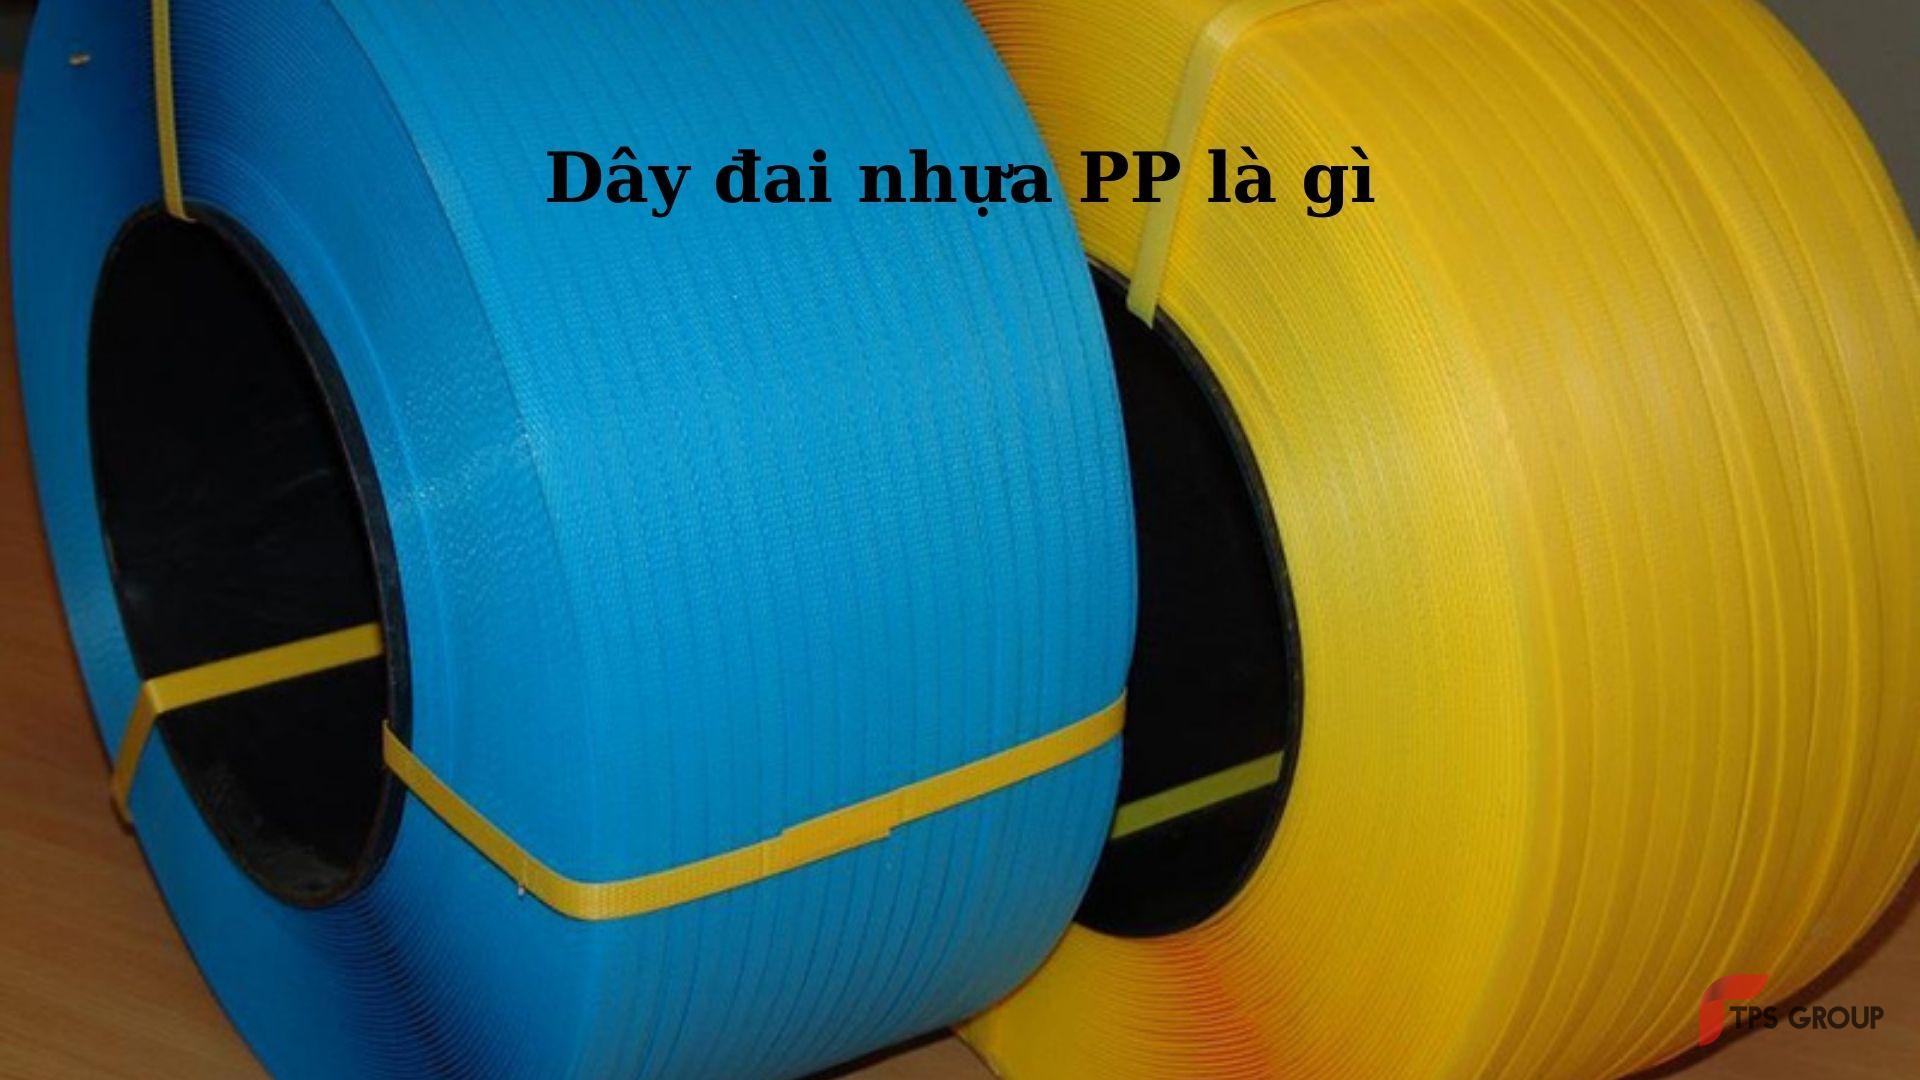 day-dai-nhua-pp-la-gi-hinh-1